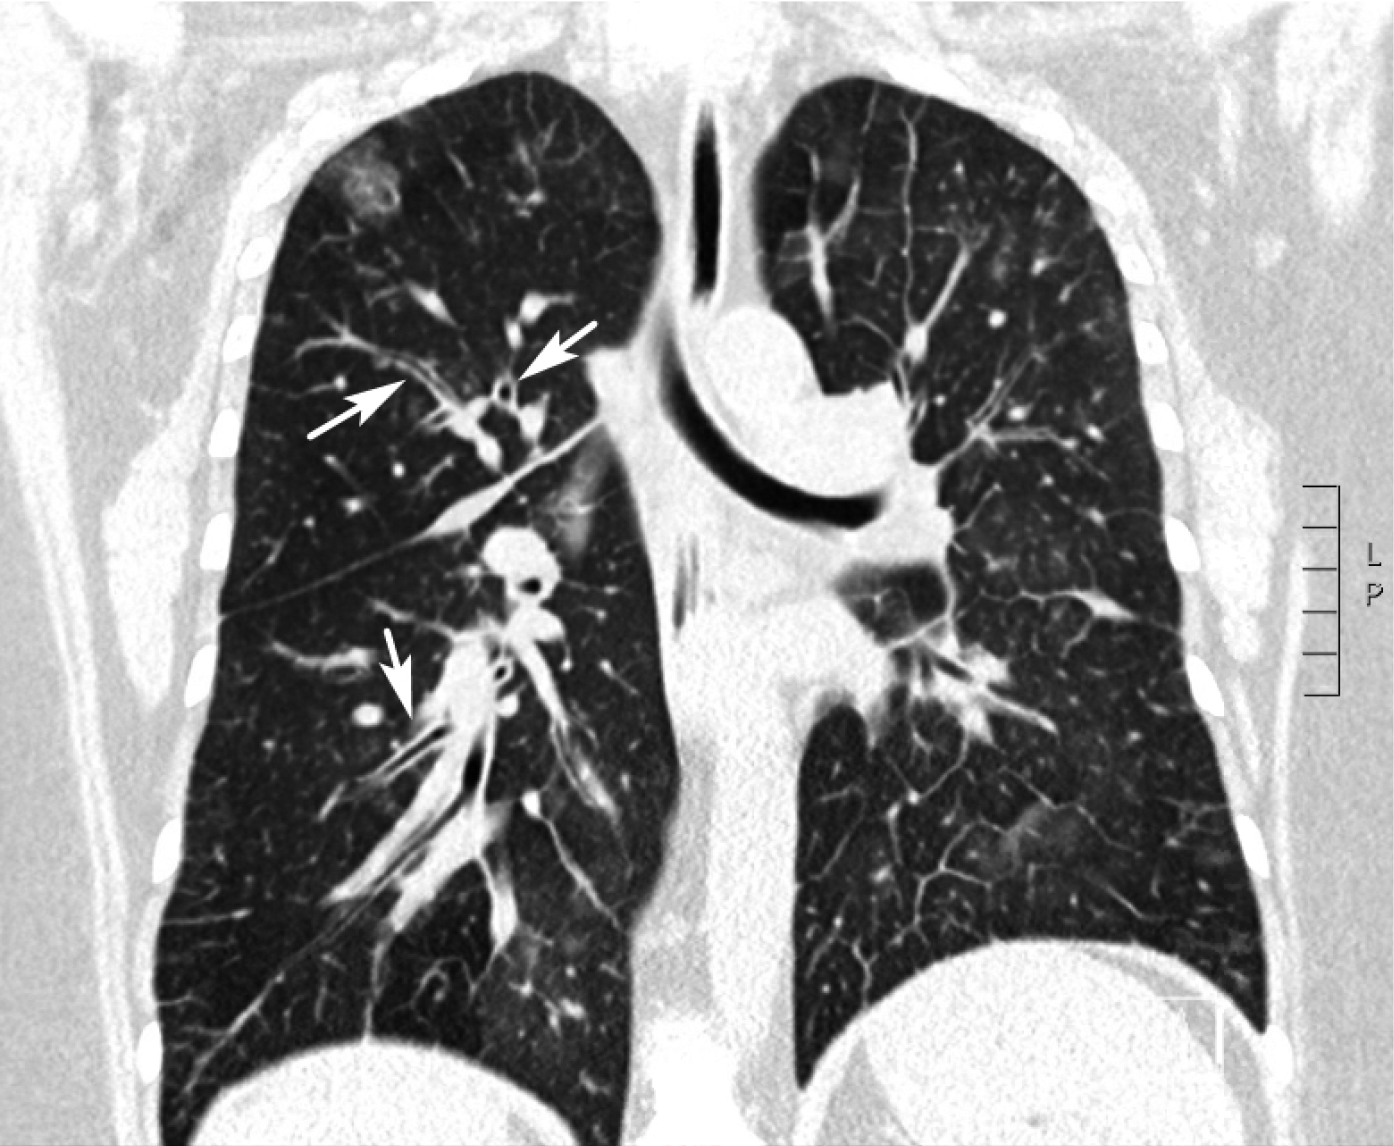  
Fig. 30.1-7.  Tomografía computarizada (TC) coronal de una paciente de 35 años (caso n.º 1) que evidencia bronquios engrosados (flechas) 